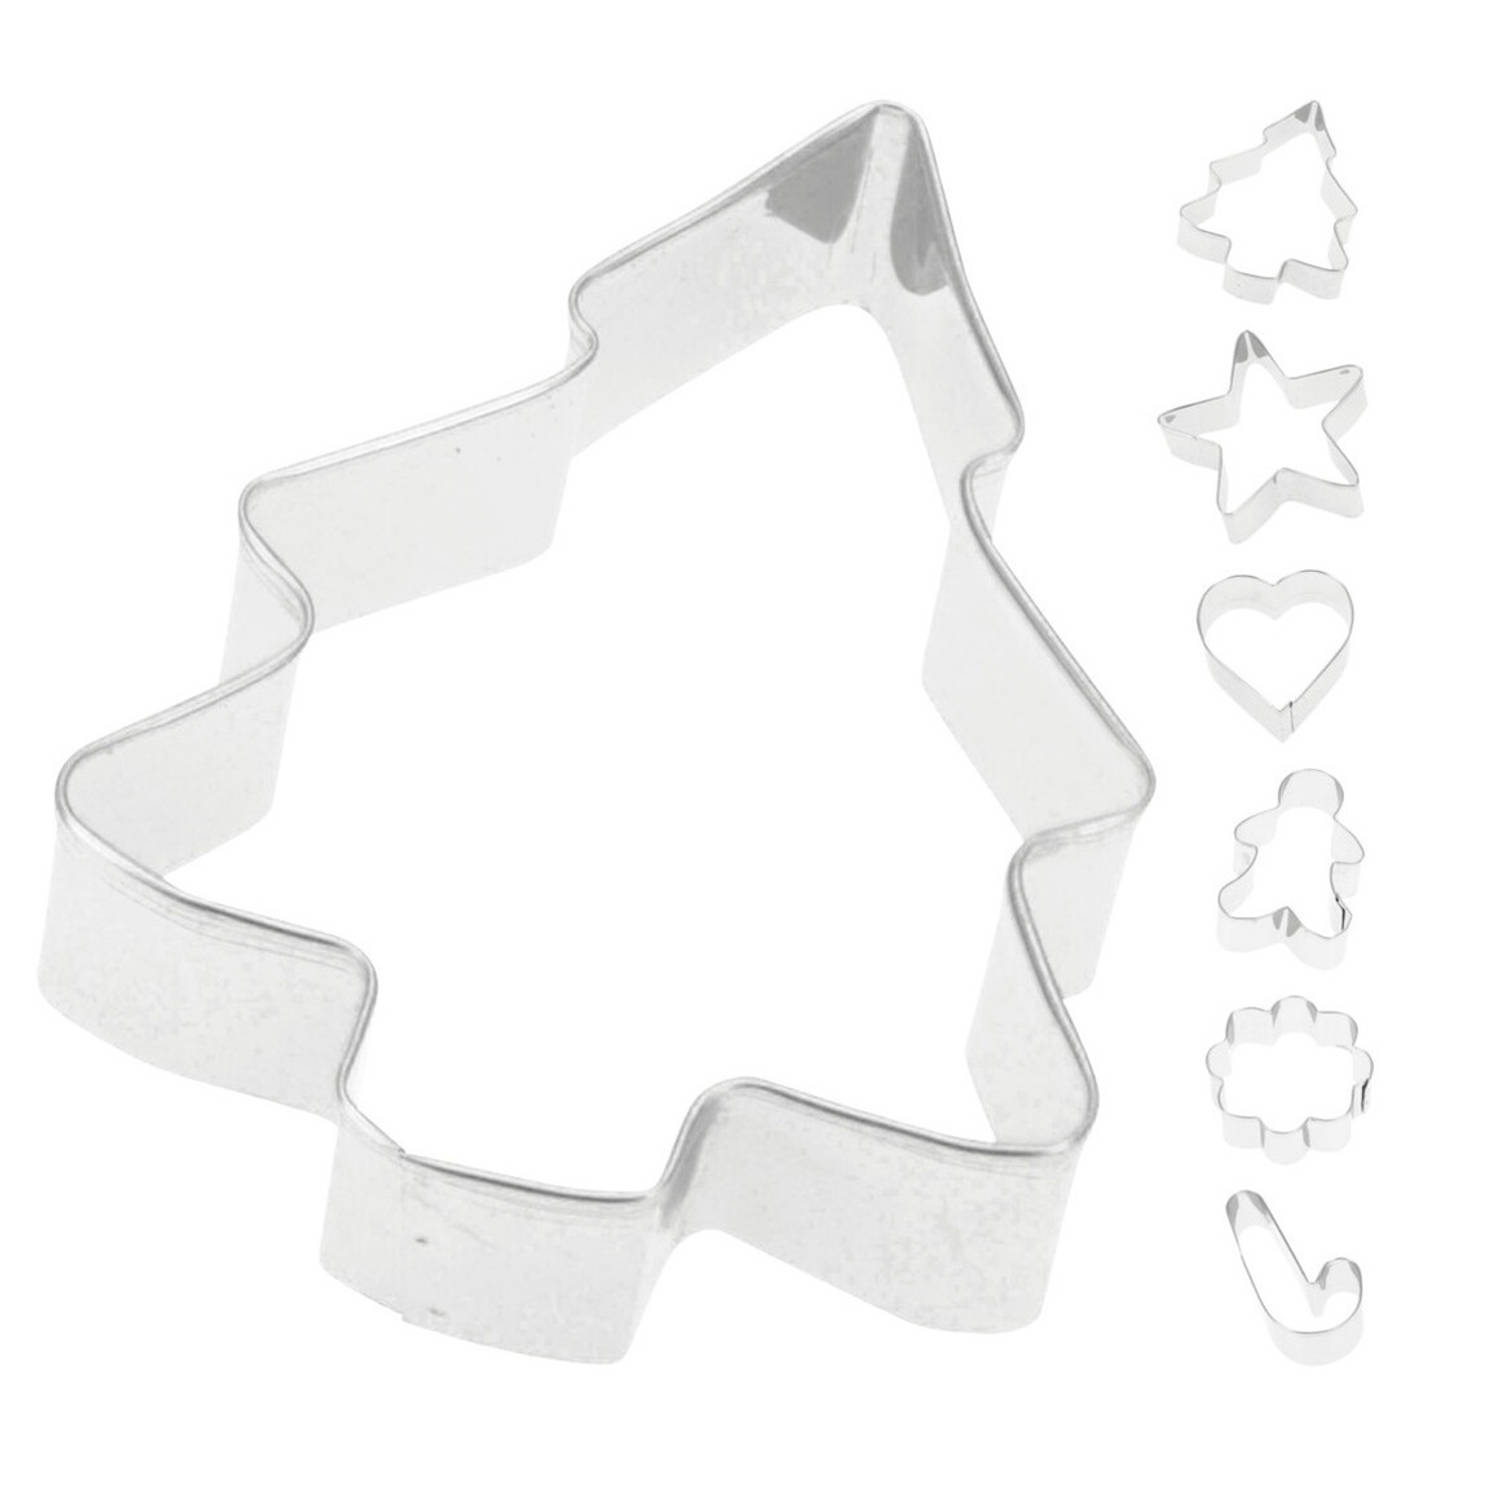 6x Kerst koekvormpjes/uitsteek vormpjes Uitsteekvormen Blokker